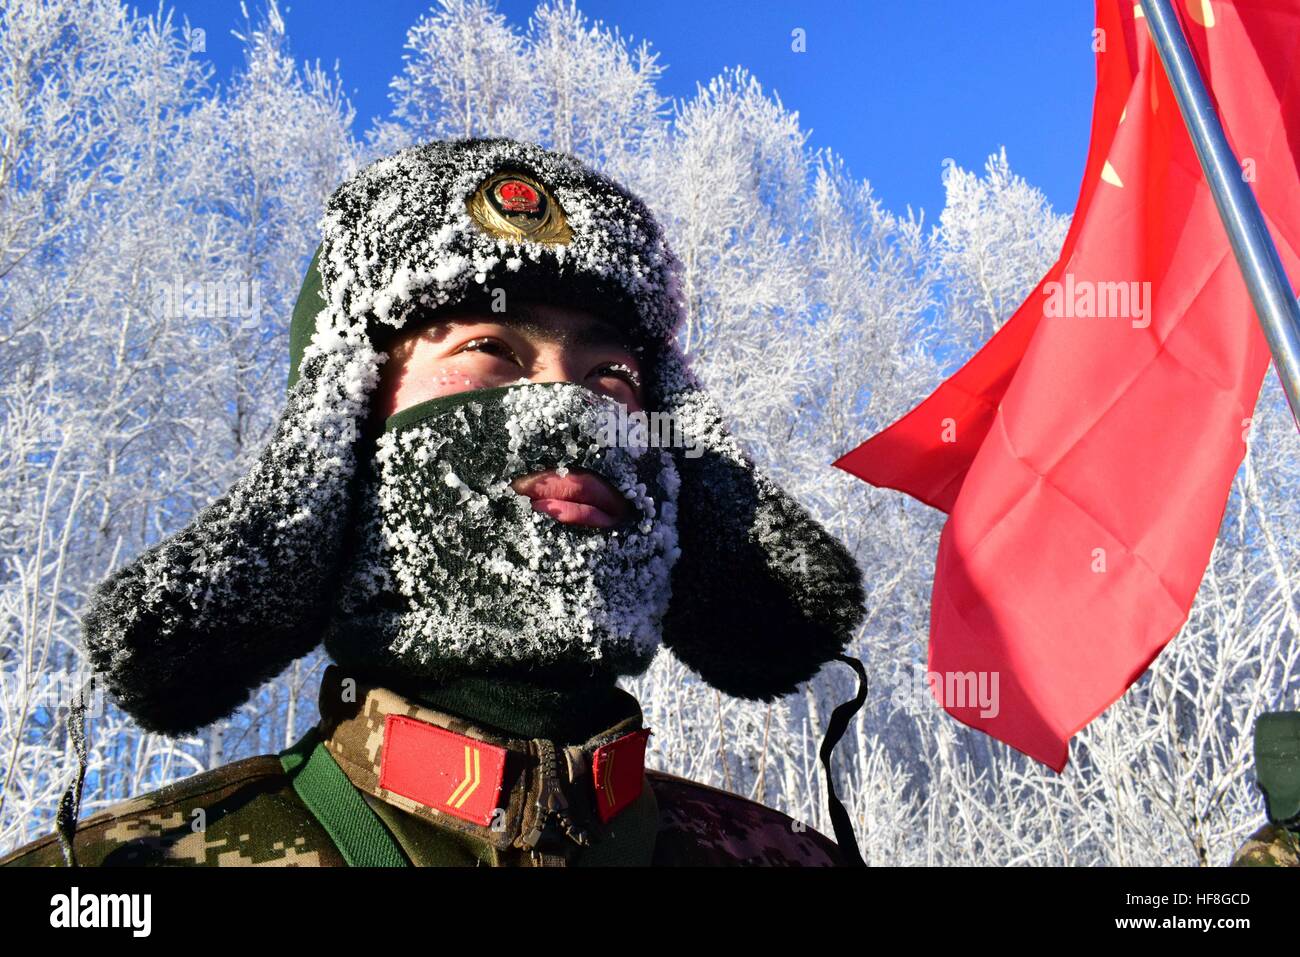 China. 22 dic, 2016. Heilongjiang, China el 22 de diciembre de 2016: (Sólo para uso editorial. CHINA)soldados reciben entrenamiento militar en clima frío de menos 41 grados centígrados en el noreste de la provincia de Heilongjiang en China, el 22 de diciembre de 2016. Aunque es extremadamente frío fuera, los soldados aún se aferran a permanecer en el campo de nieve, con aspecto de "Guerreros de terracota" en invierno. © SIPA Asia/Zuma alambre/Alamy Live News Foto de stock